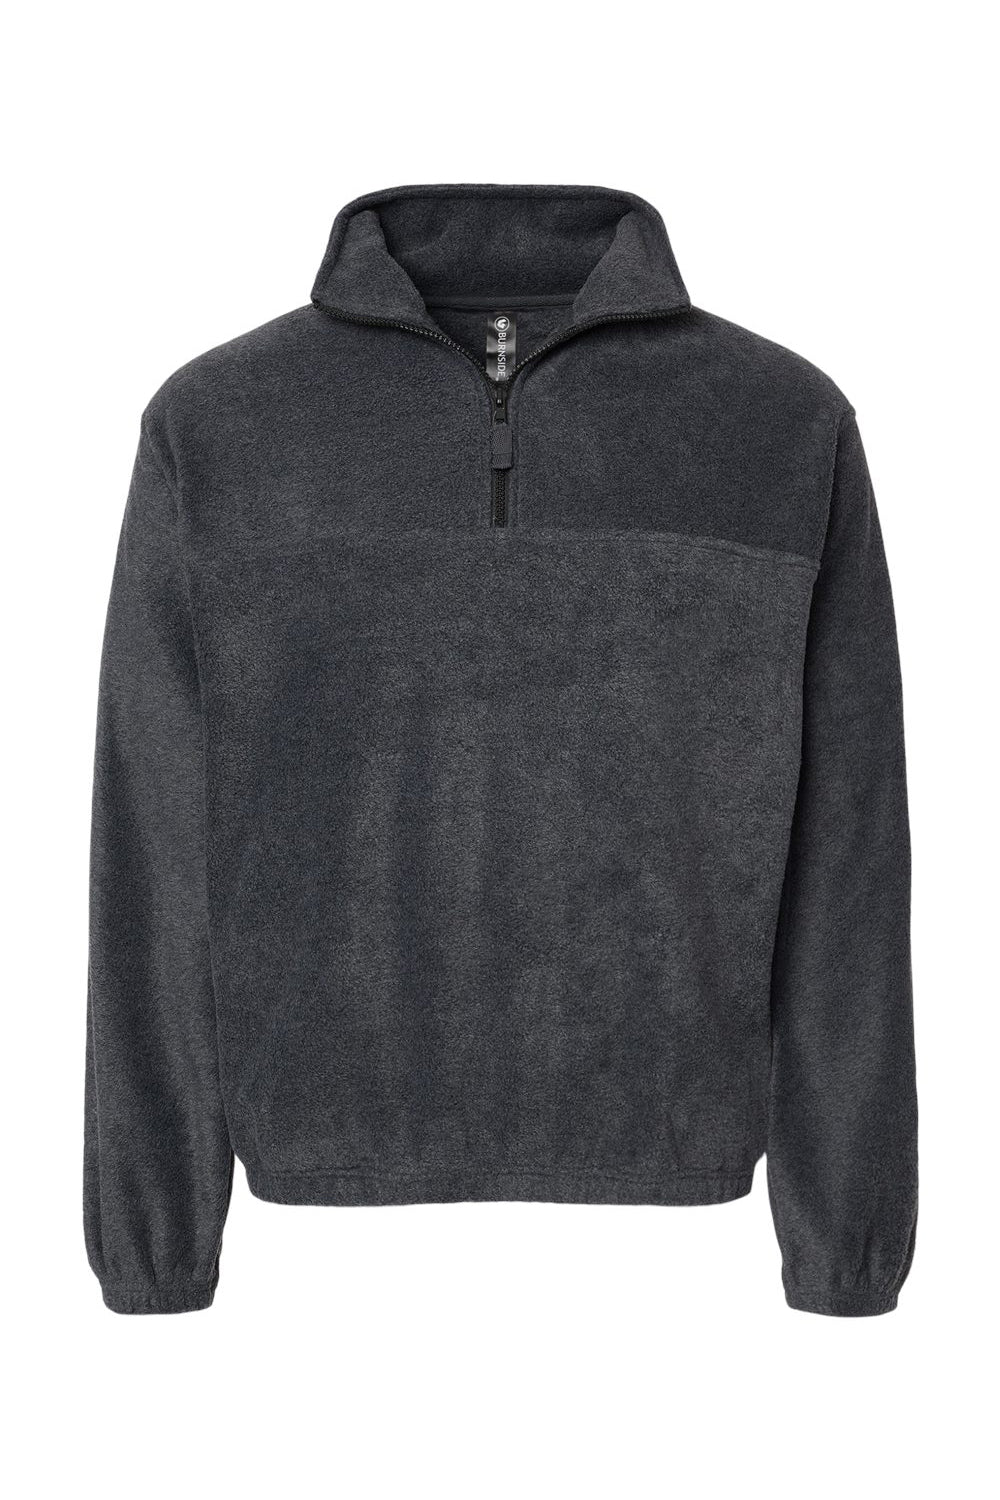 Burnside 3052 Mens Polar Fleece 1/4 Zip Sweatshirt Heather Charcoal Grey Flat Front